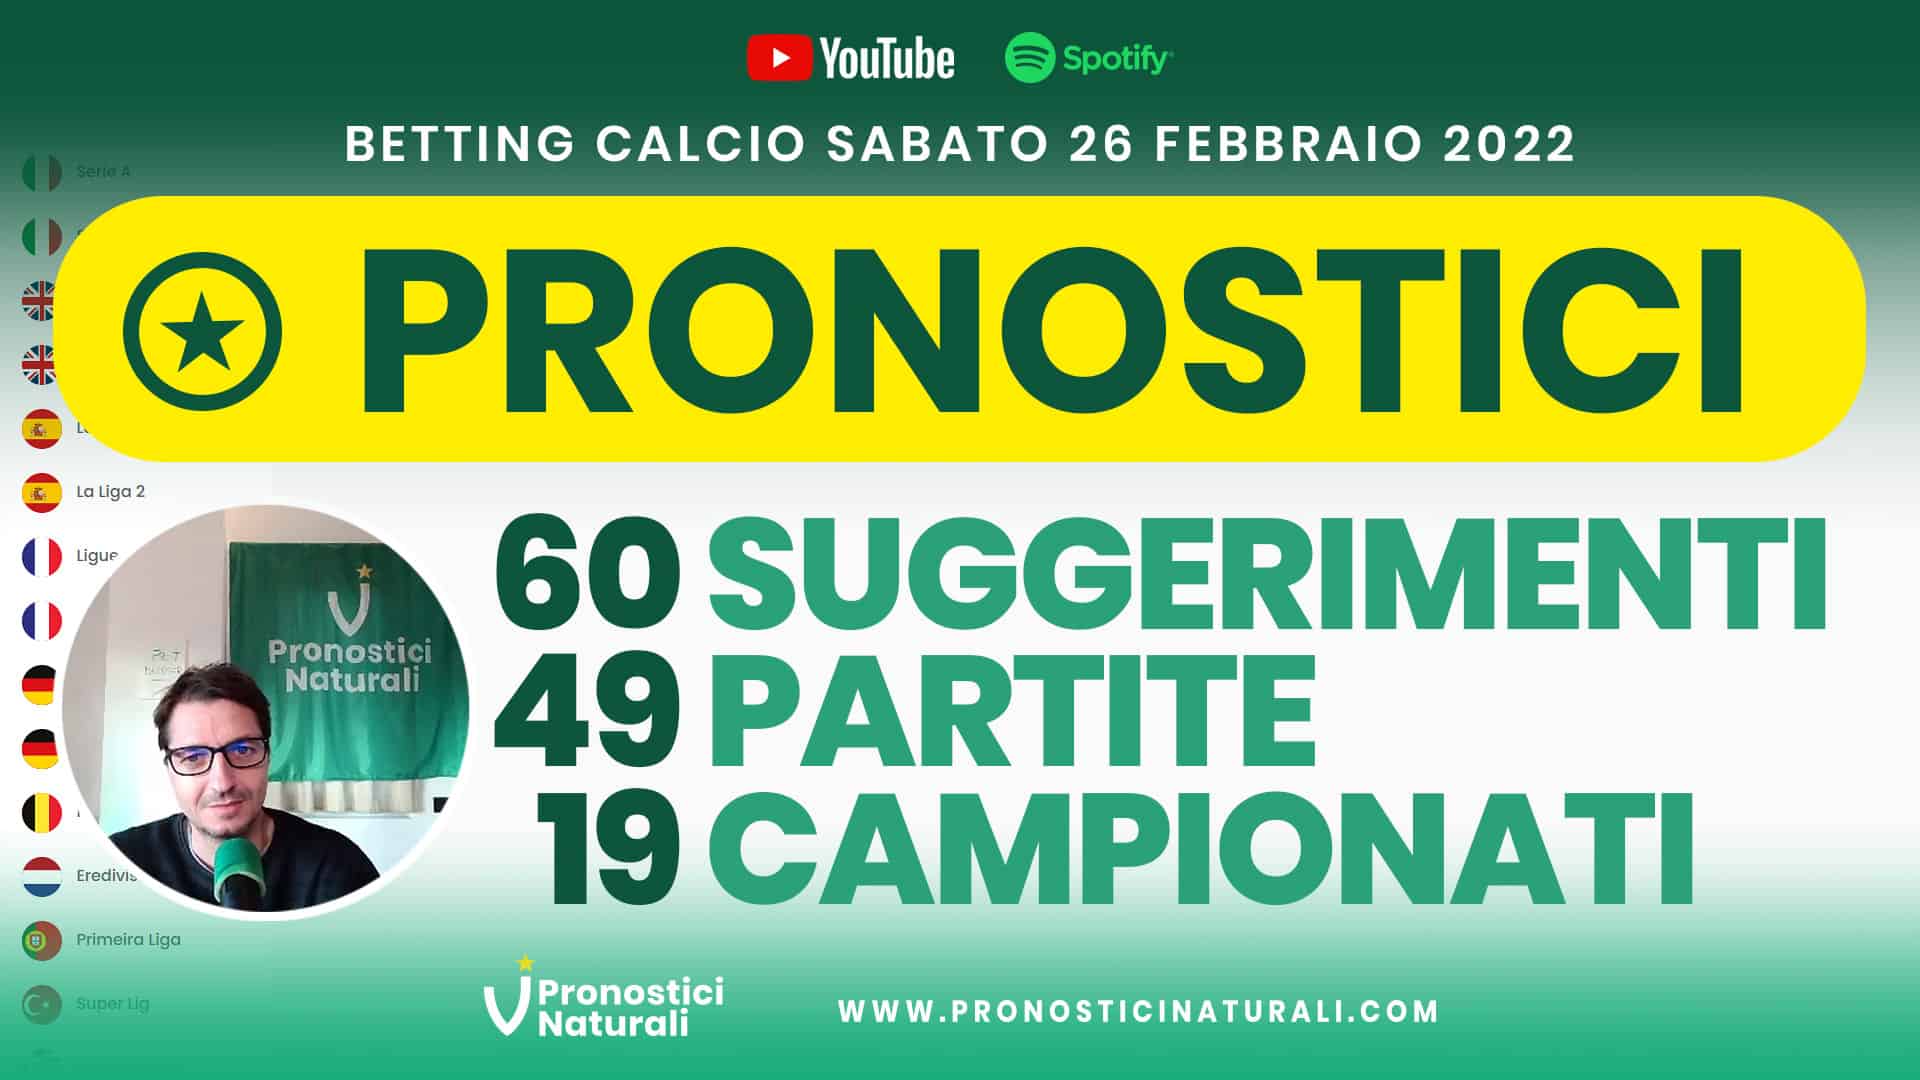 Pronostici Naturali Video Analisi Scommesse Betting Calcio Analisi Pre Partite Sabato 26 Febbraio 2022